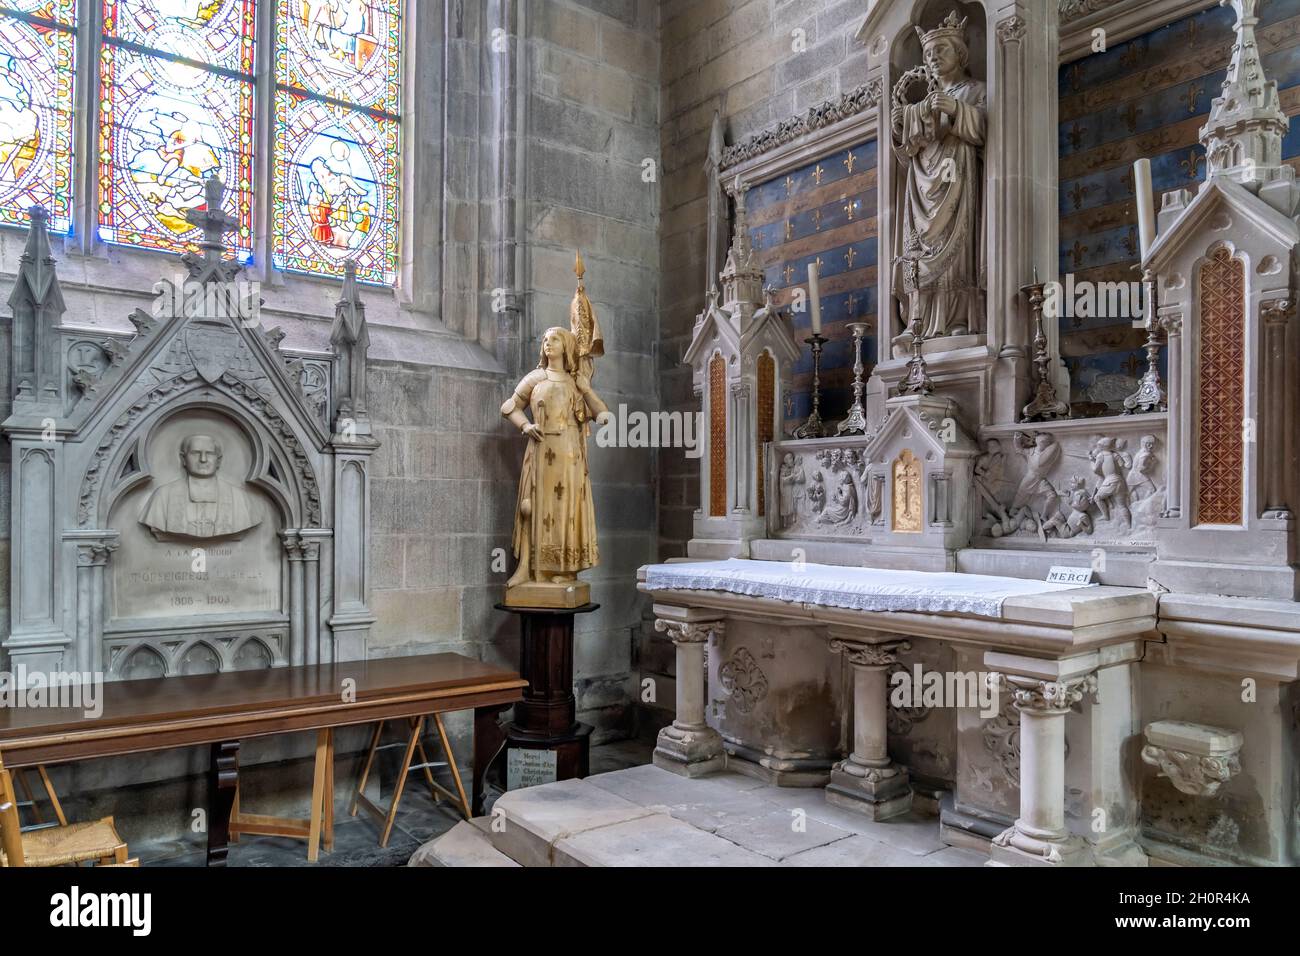 Innenraum der Kathedrale von Vannes, Bretagne, Frankreich | Vannes Cathedral interior, Vannes, Bretagne, Frankreich Stockfoto